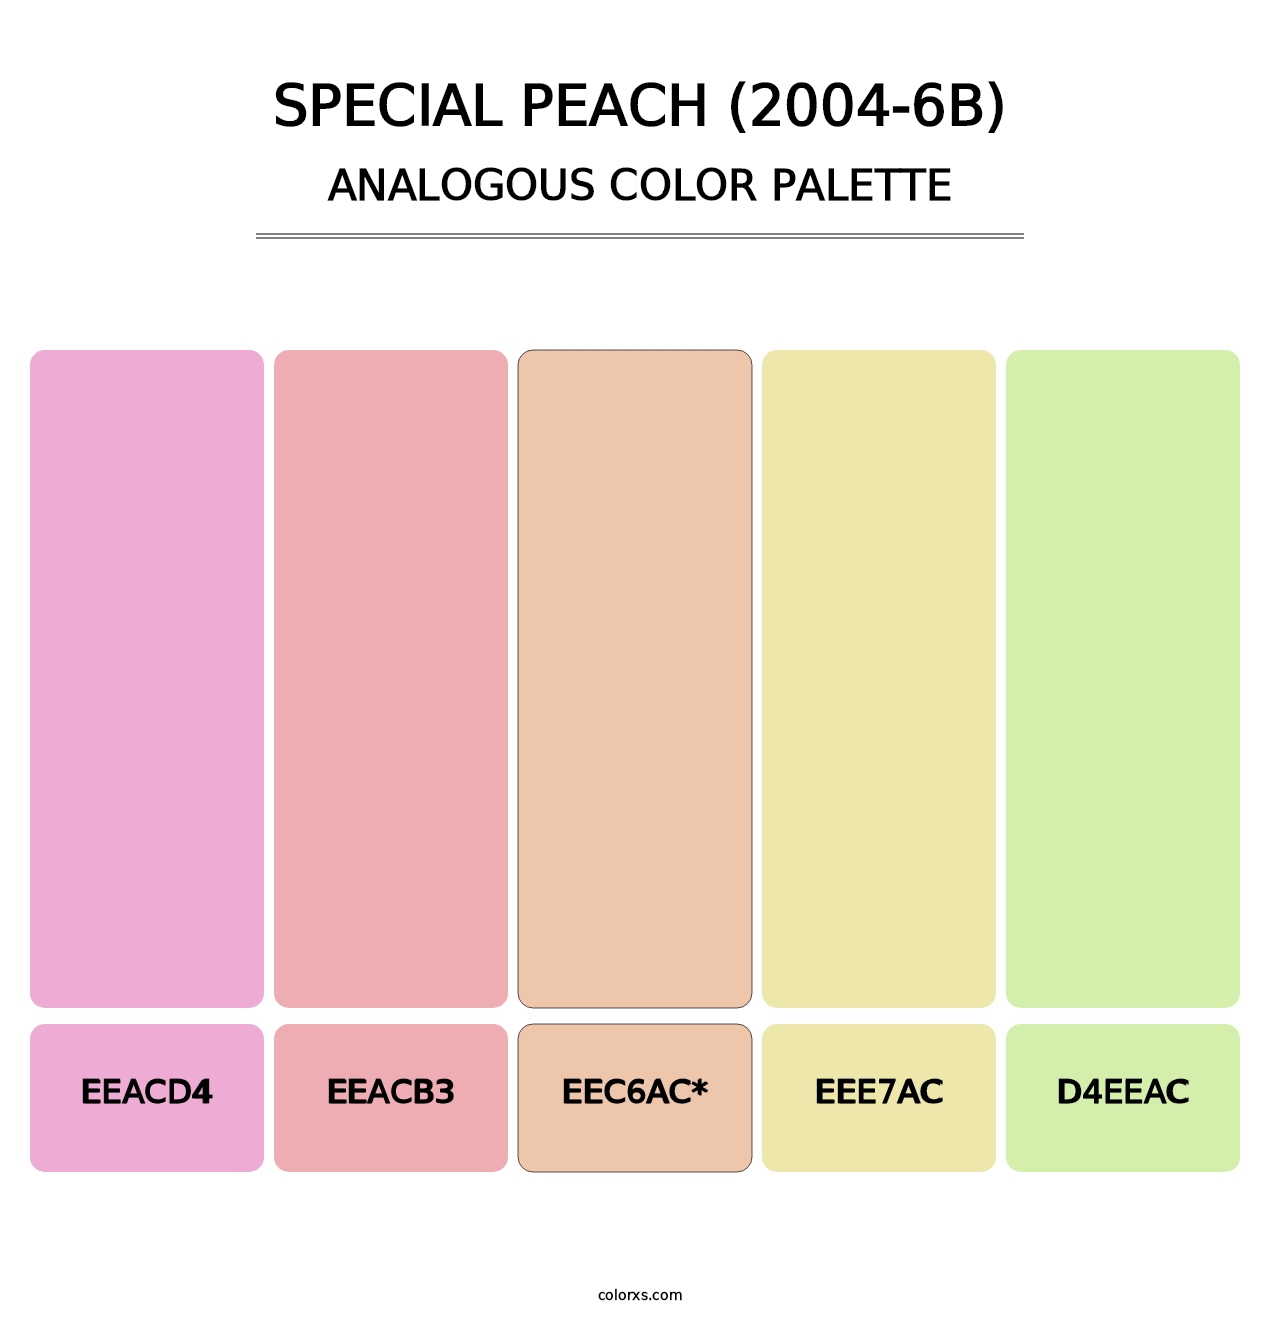 Special Peach (2004-6B) - Analogous Color Palette